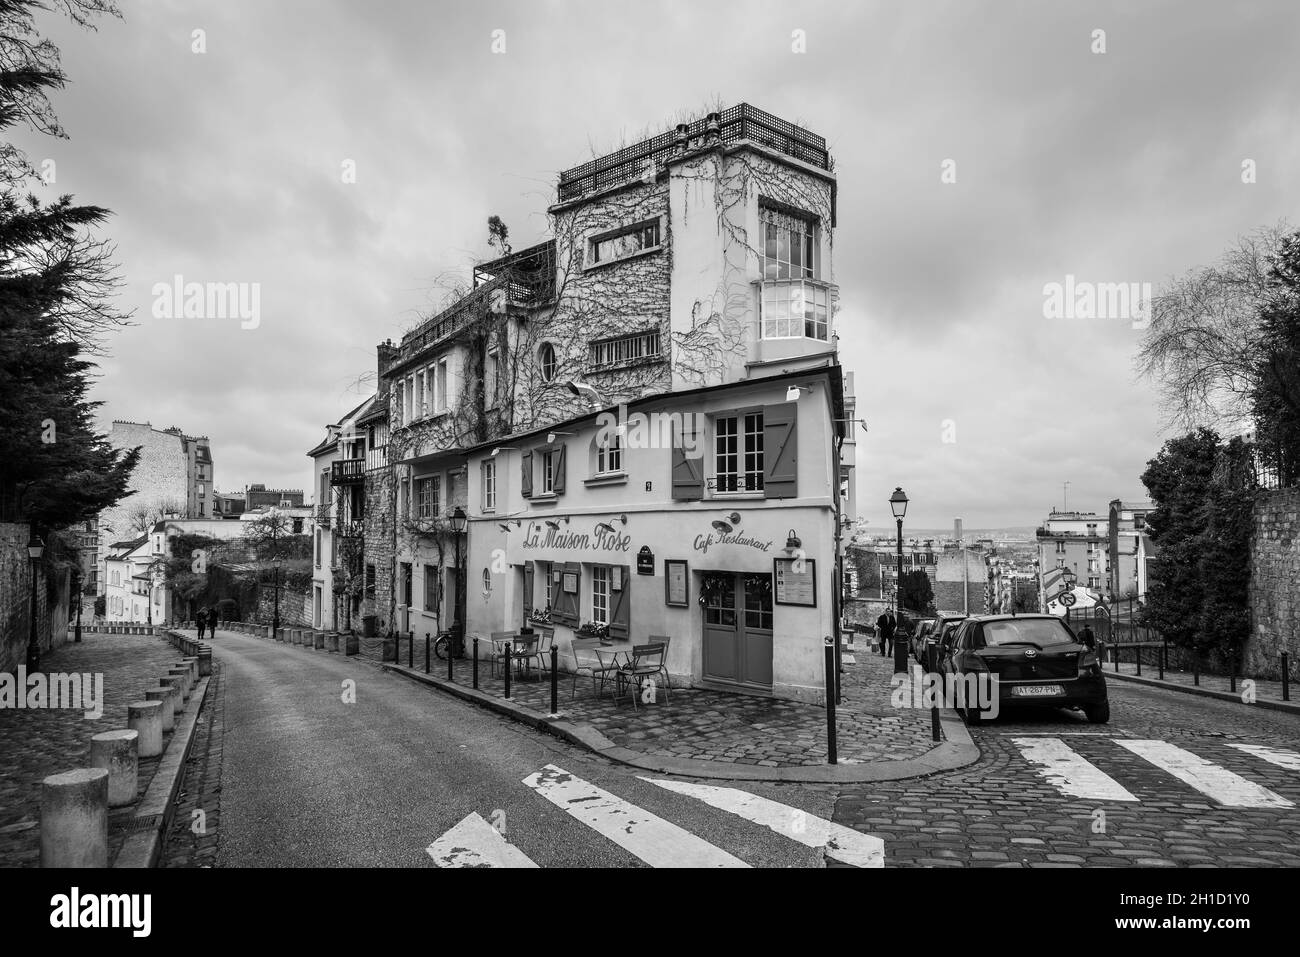 Paris, Frankreich - 24. Dezember 2018: Außenansicht des Restaurants La Maison Rose in Montmartre, Paris, Frankreich. Schwarzweißfotografie. Architektur und l Stockfoto